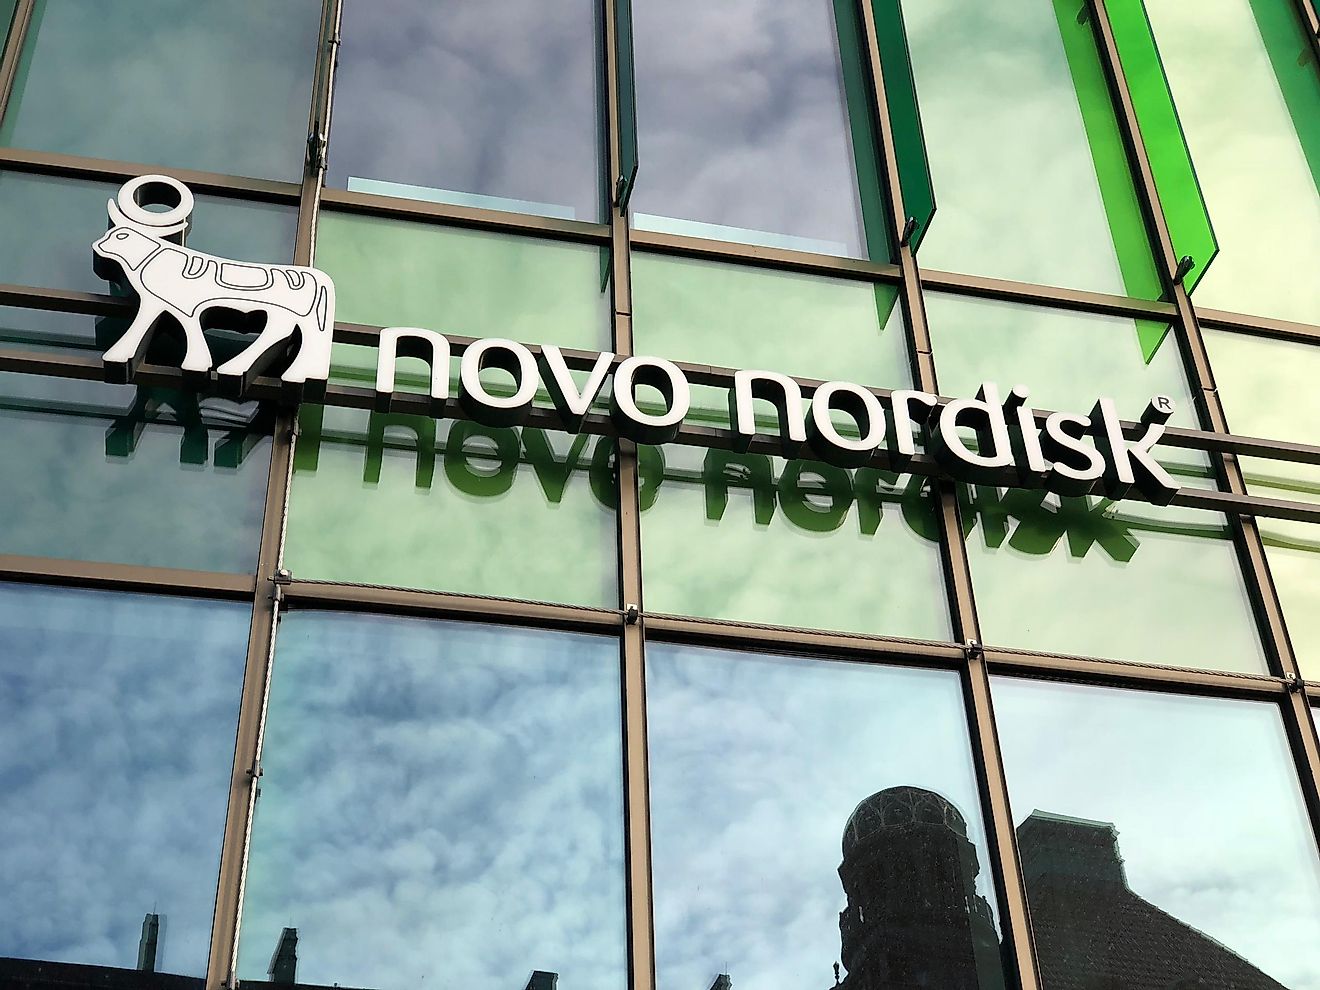 Novo Nordisk. Image credit: joreks / Shutterstock.com